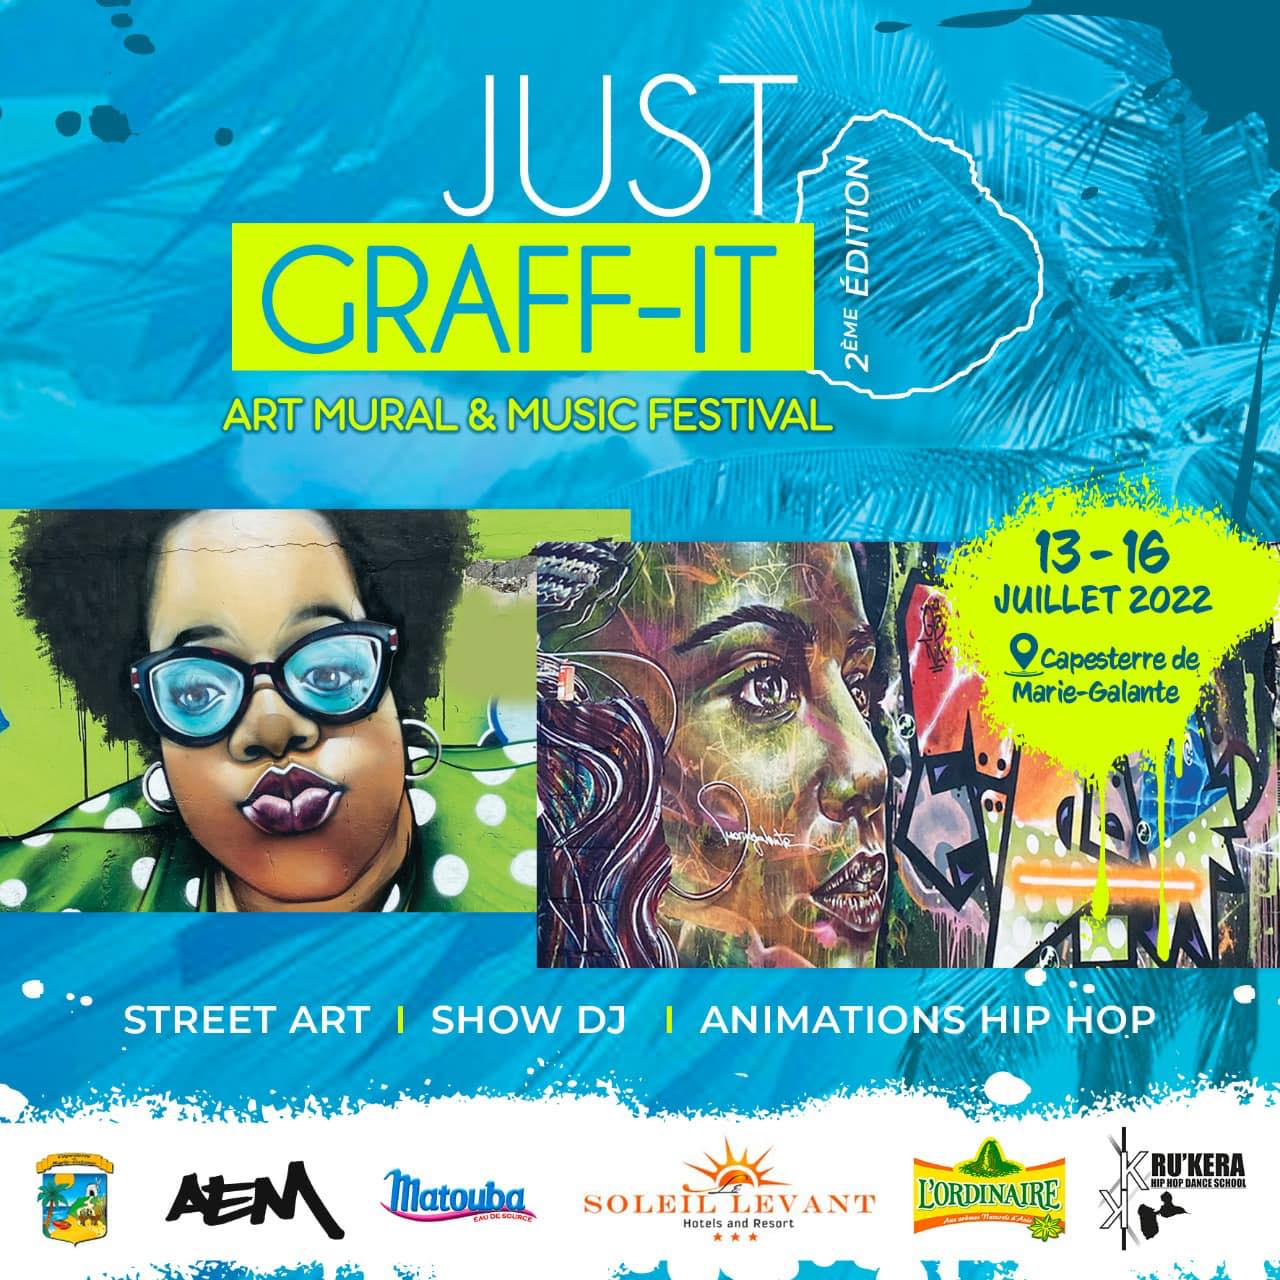     2e édition du festival « Just Graff-it »

